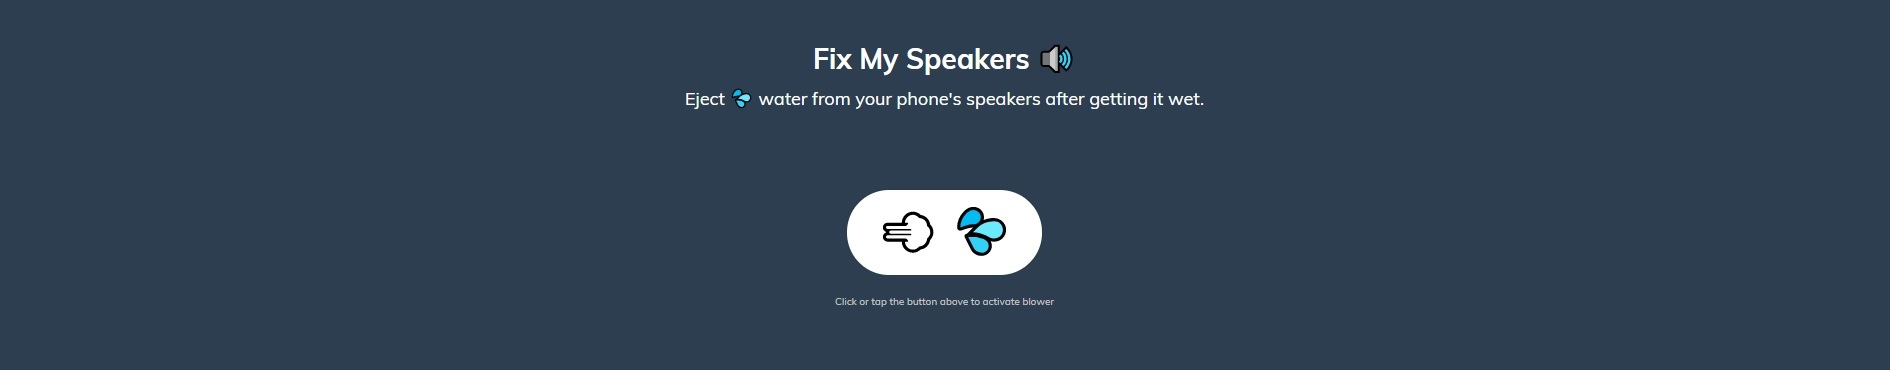 Fix my speakers